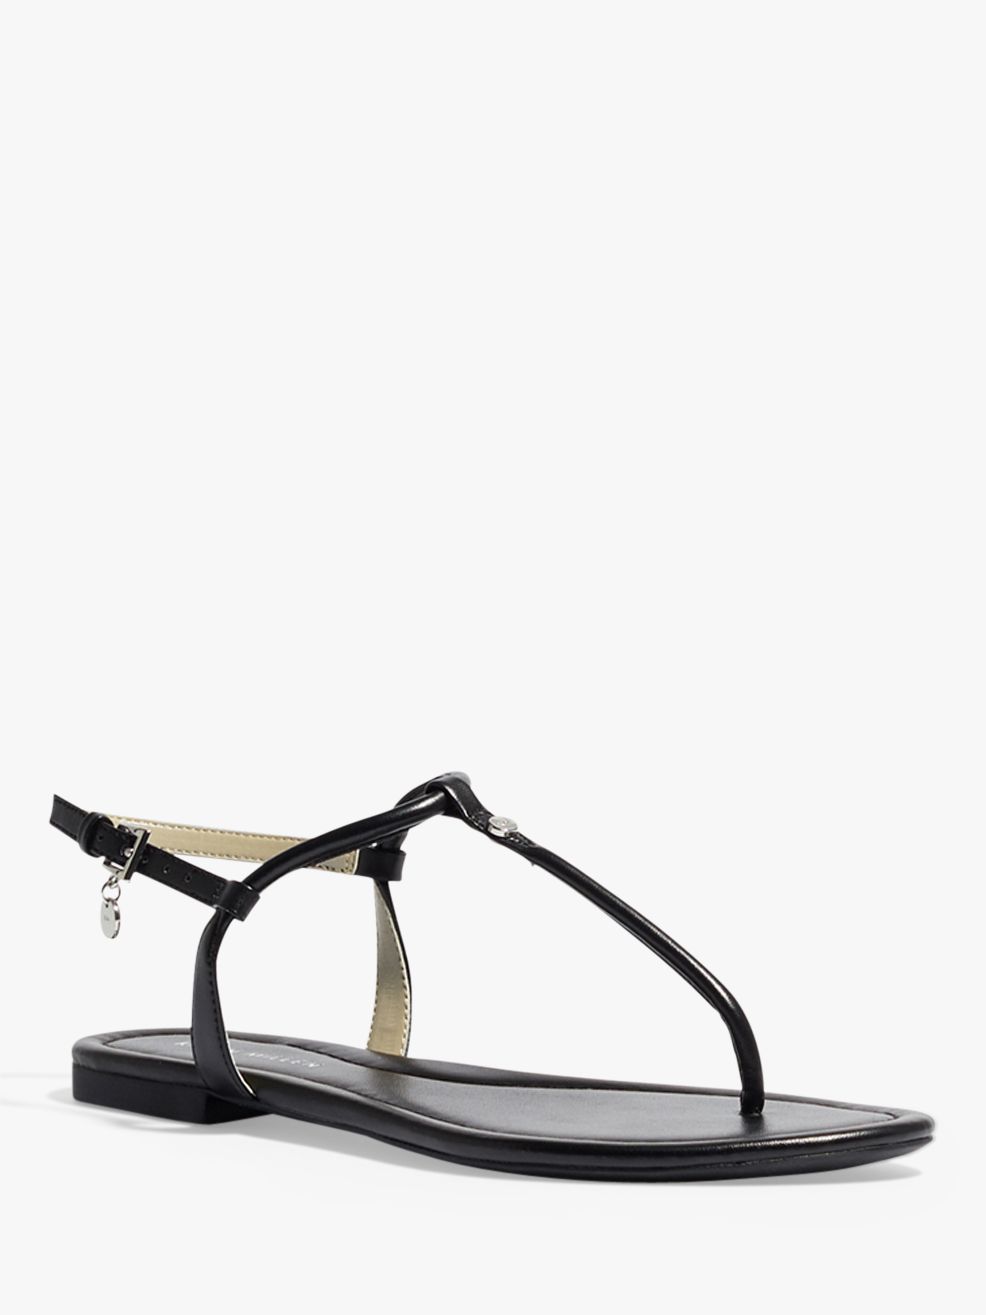 Karen Millen Flat Thong Sandals, Black 